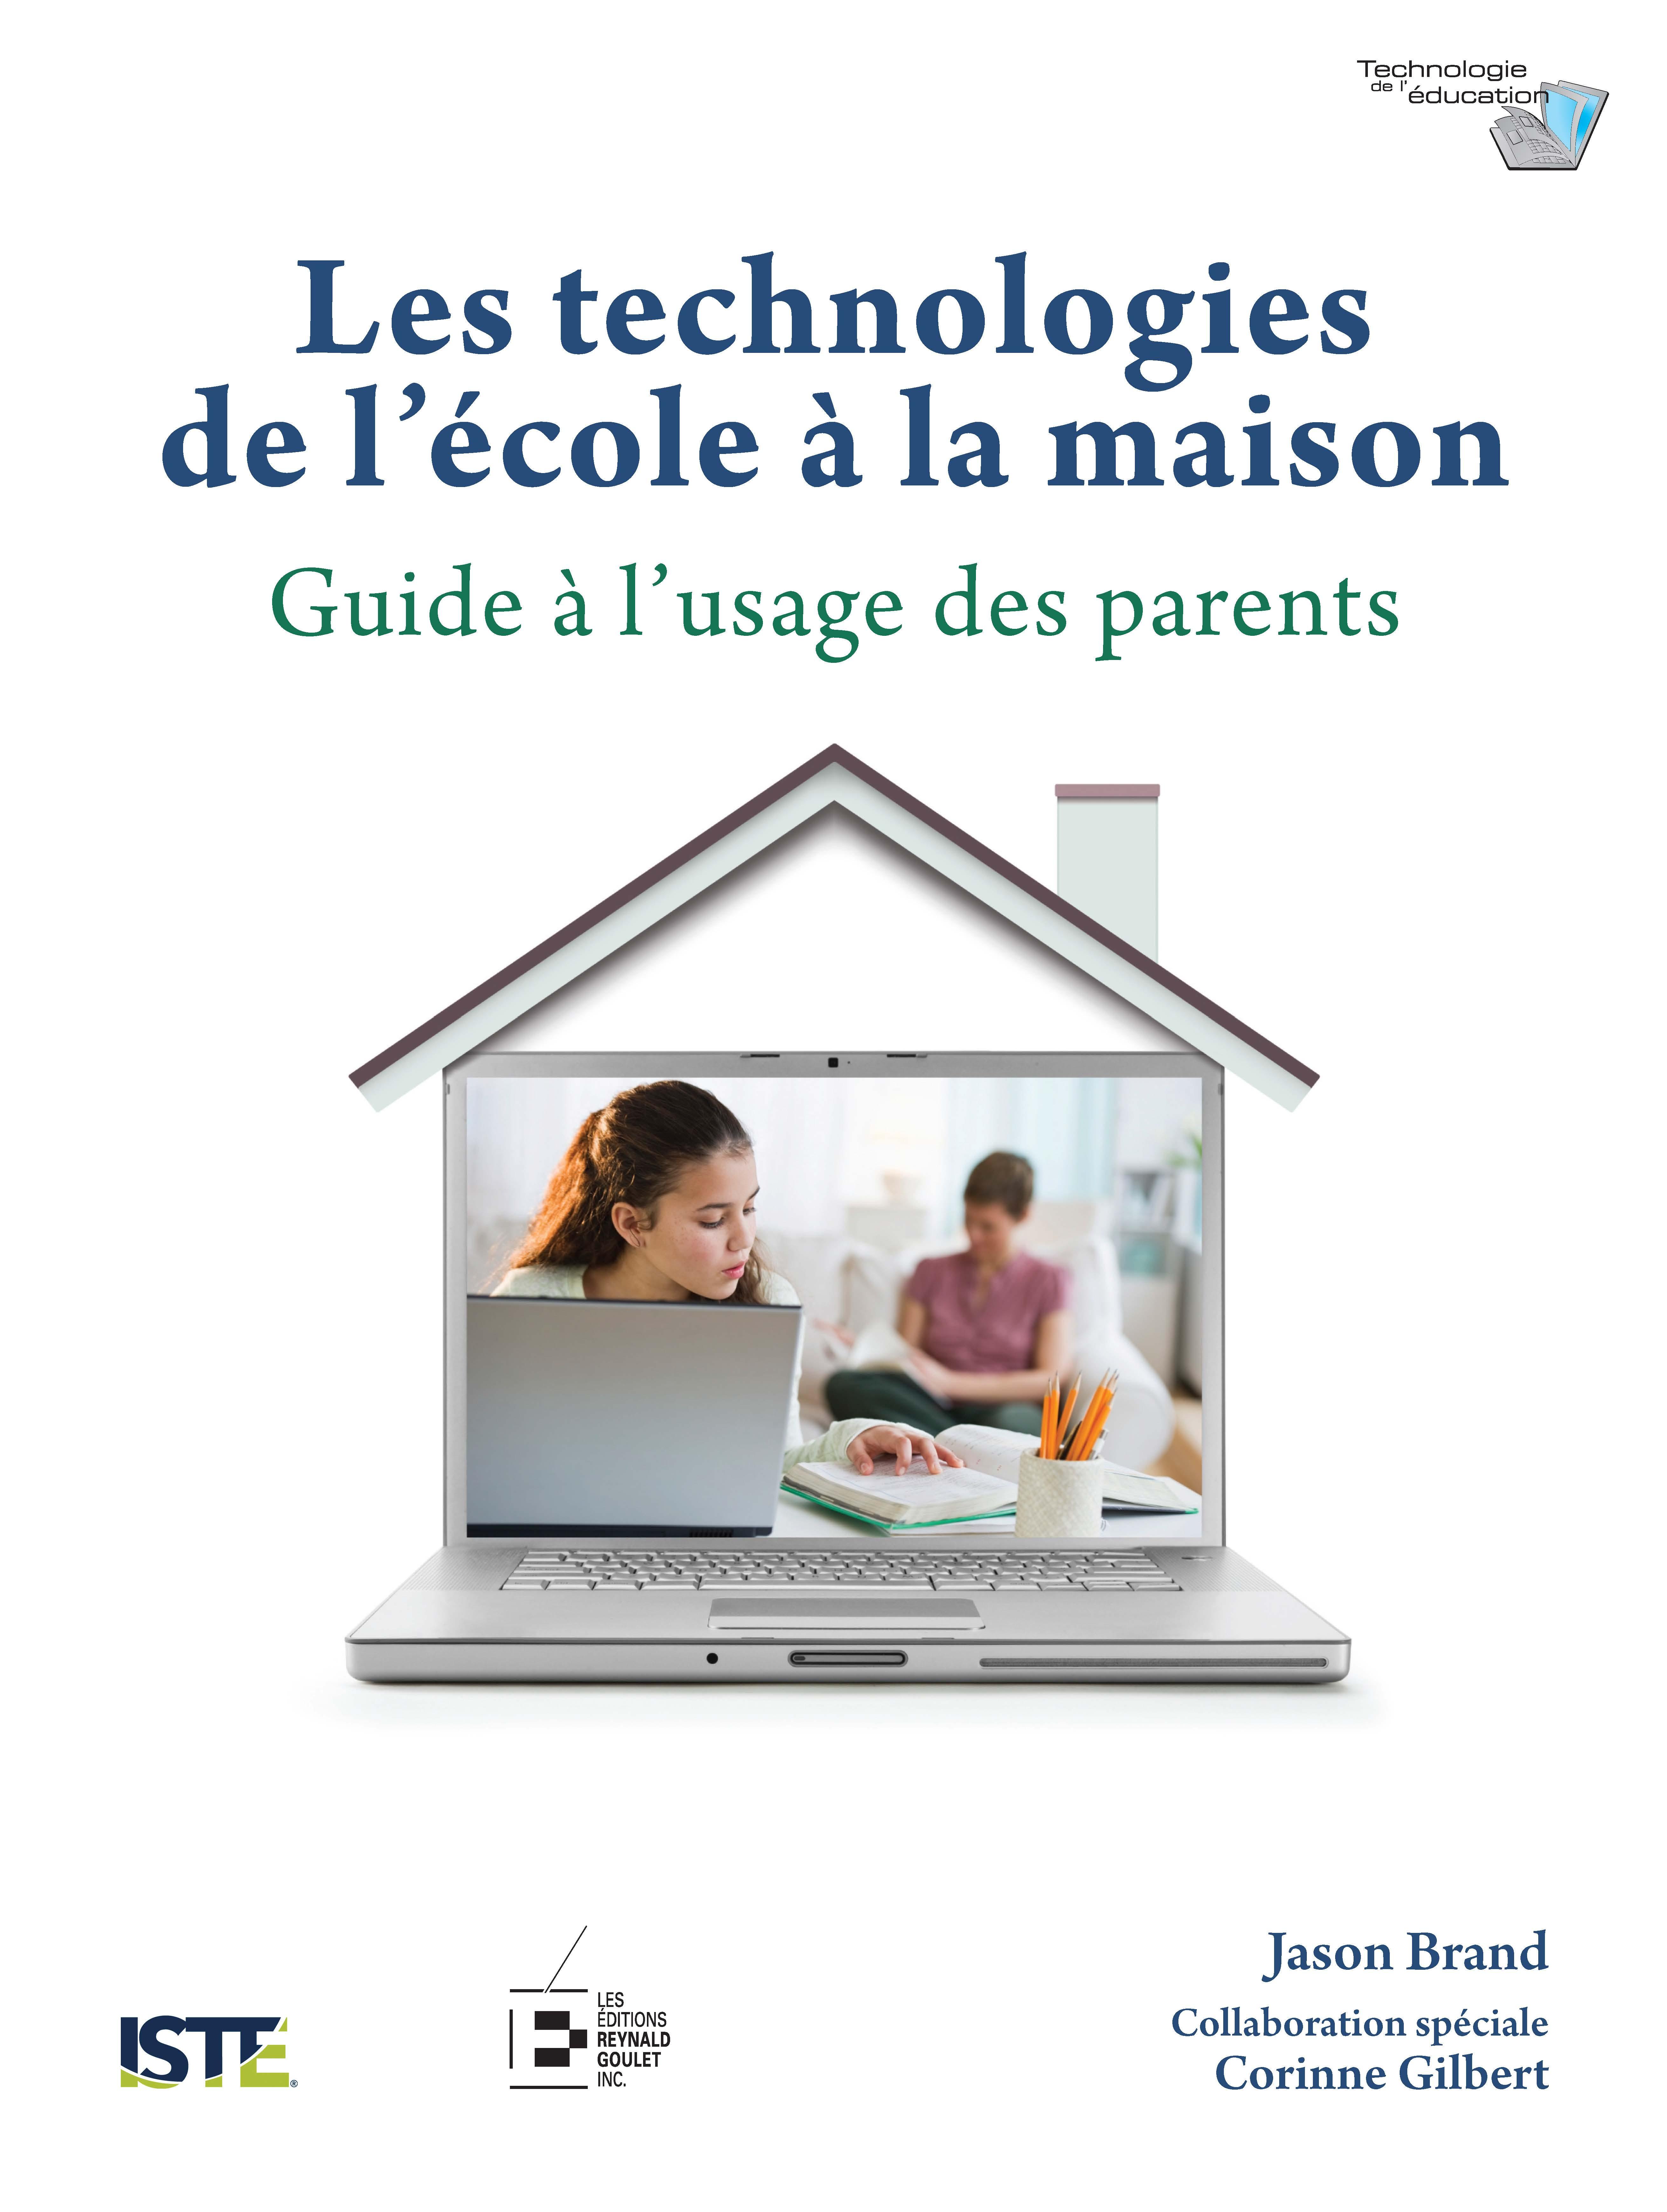 Les technologies: de l'école à la maison